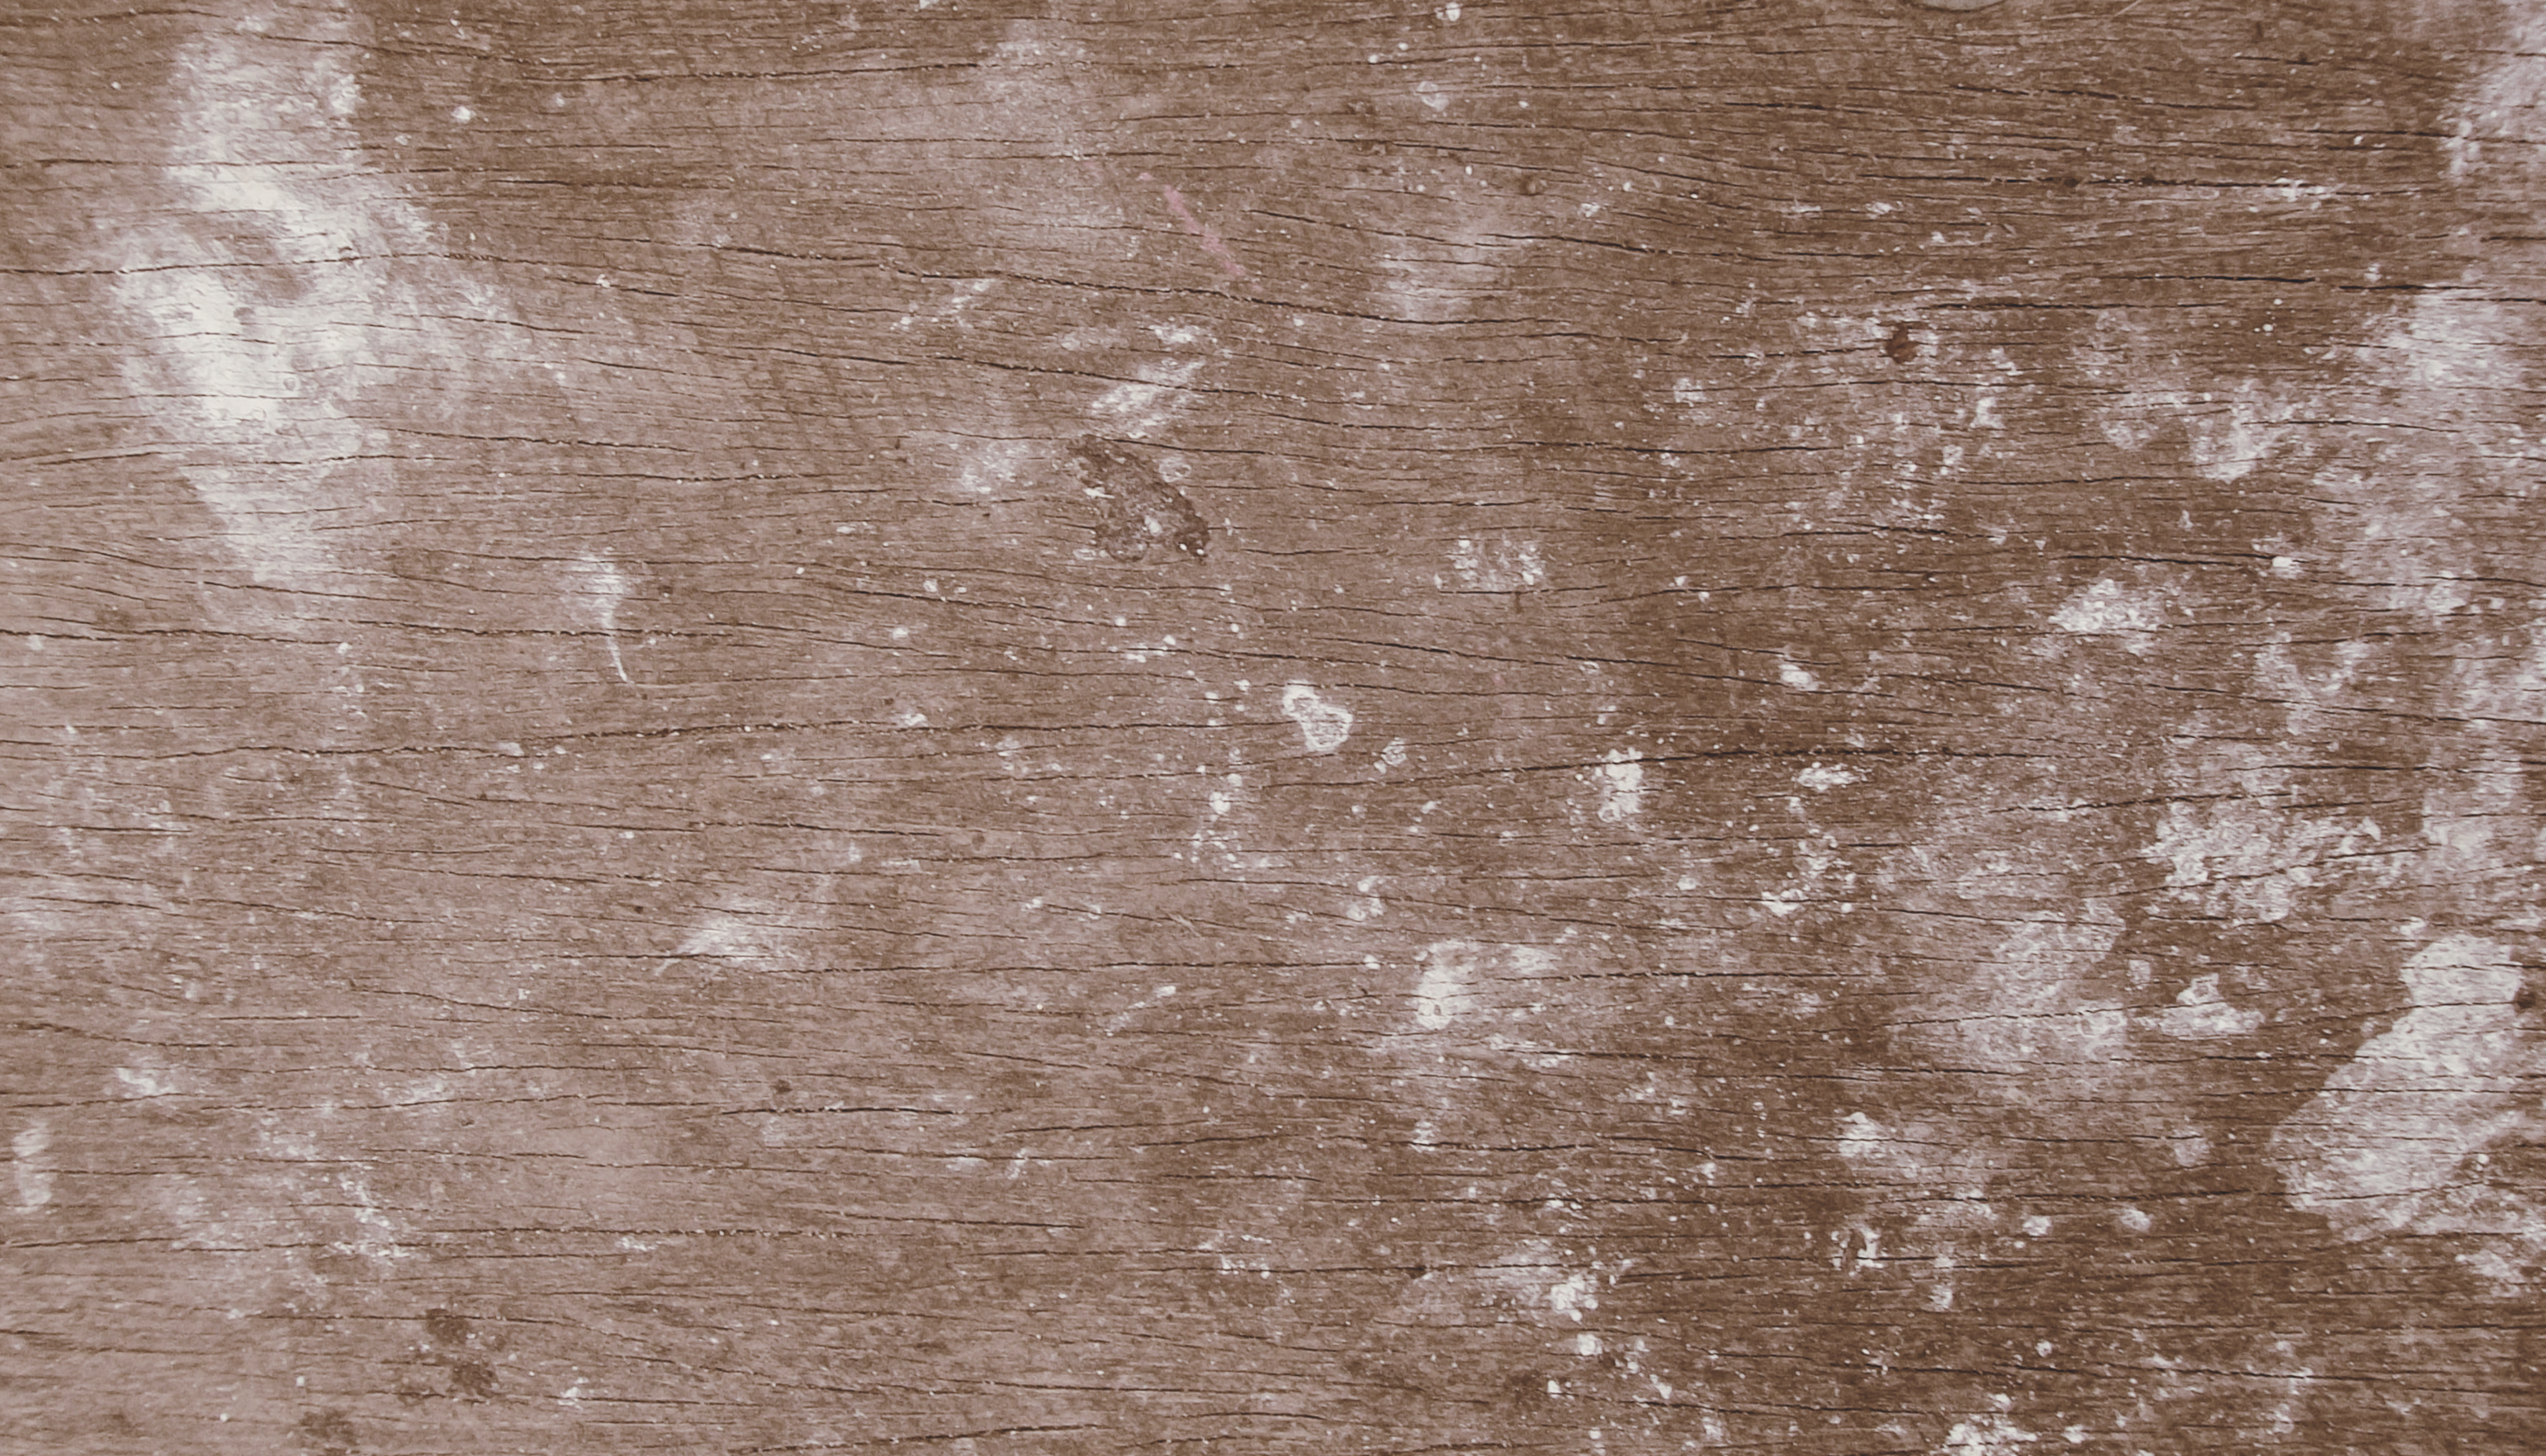 Grungey Wood Texture by AbsurdWordPreferred on DeviantArt